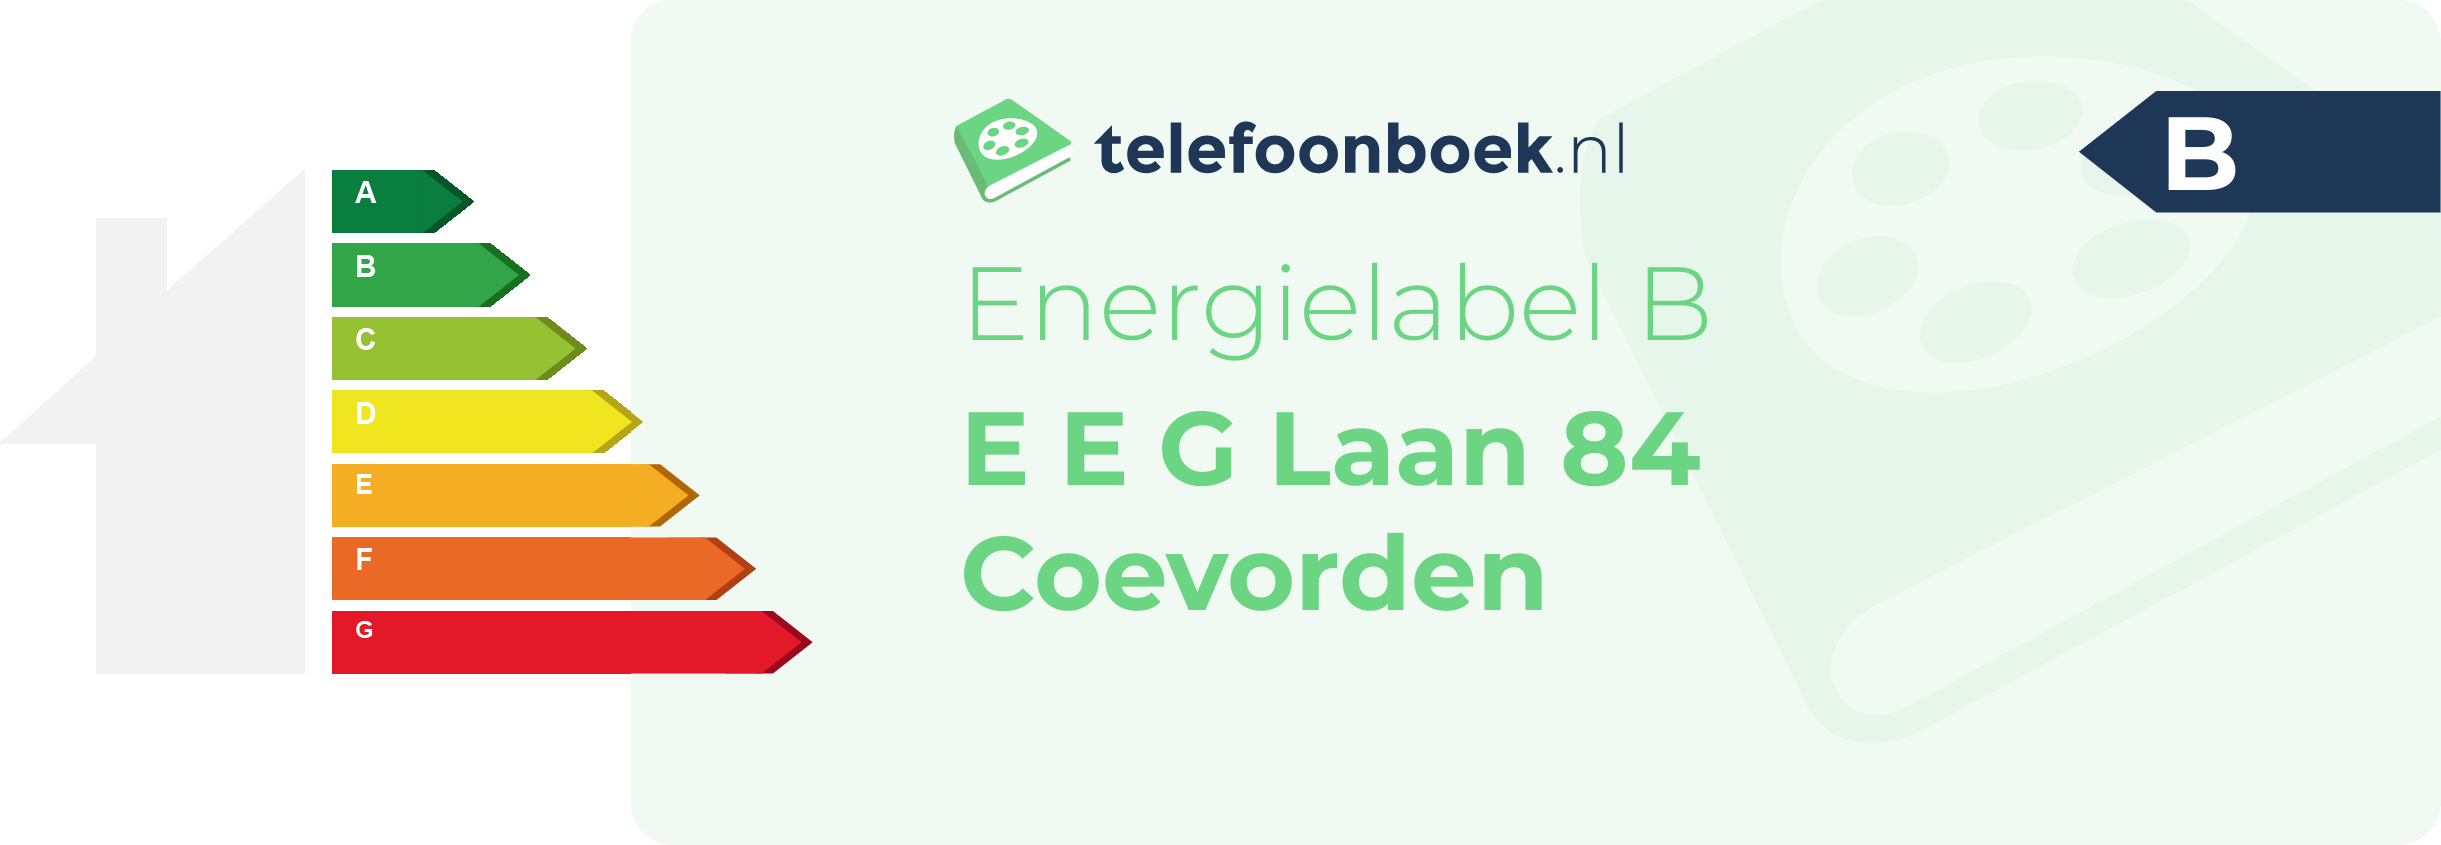 Energielabel E E G Laan 84 Coevorden